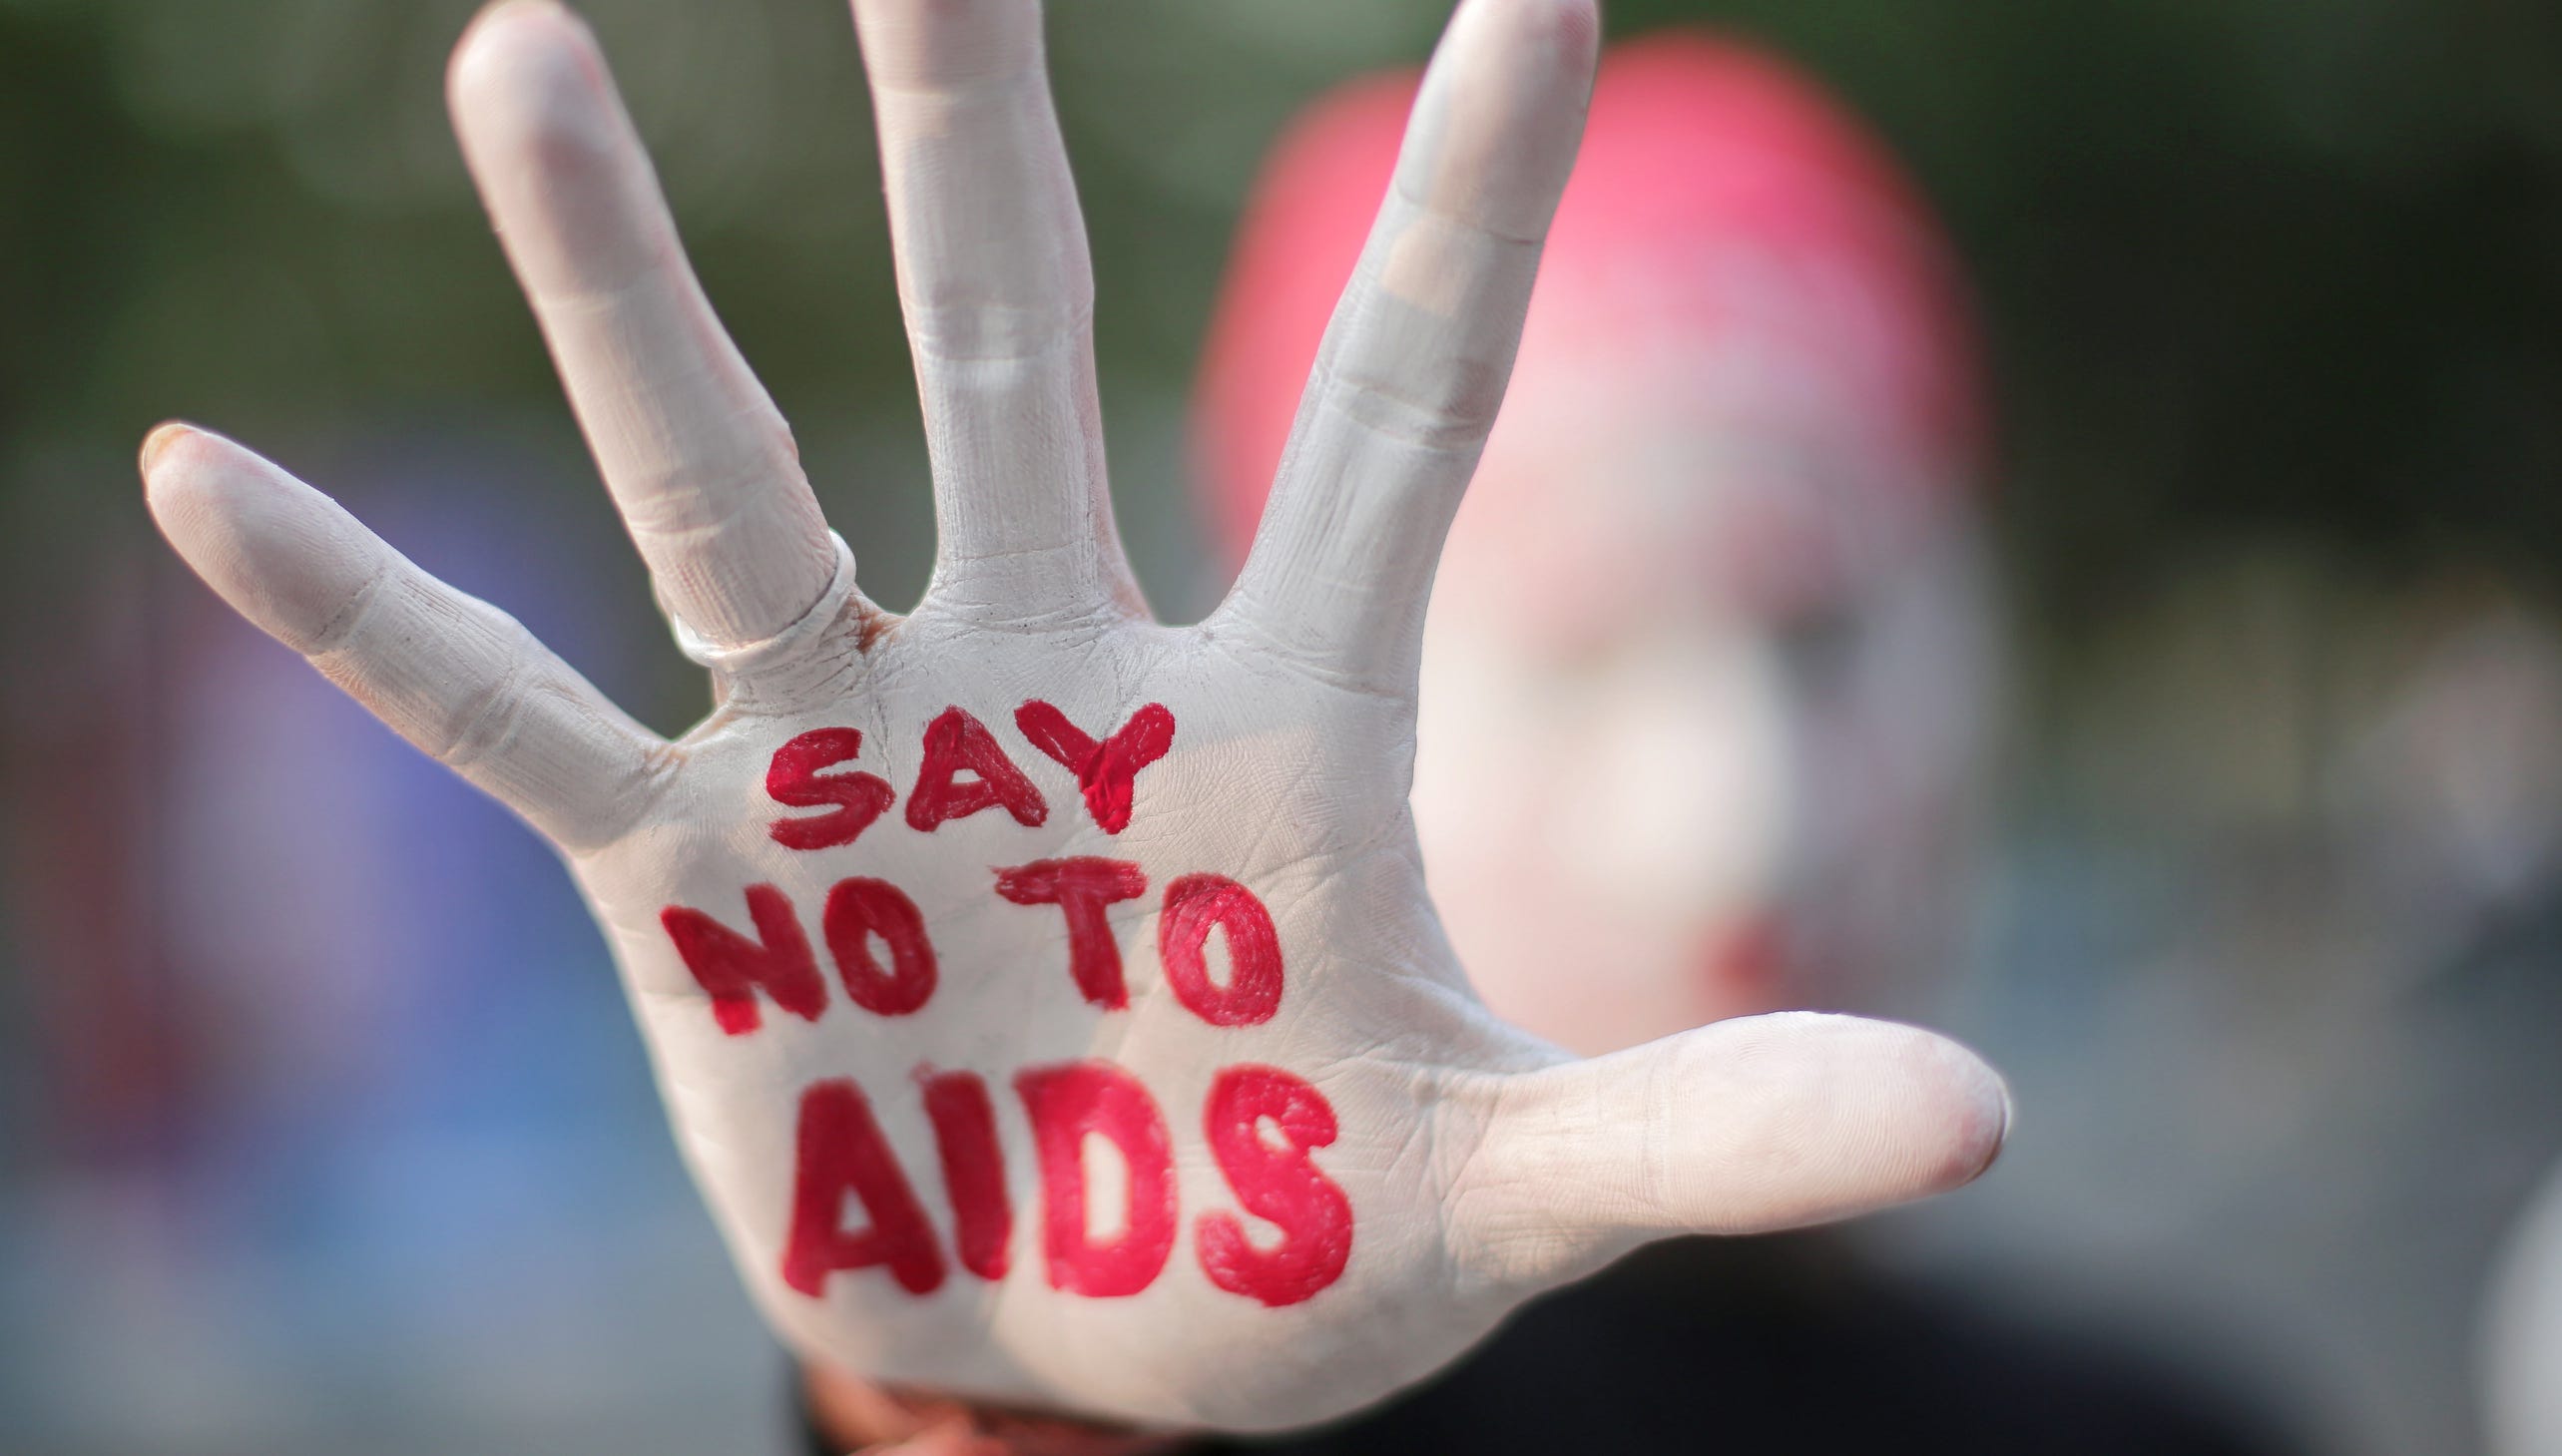 پیشگیری اورژانسی از ایدز